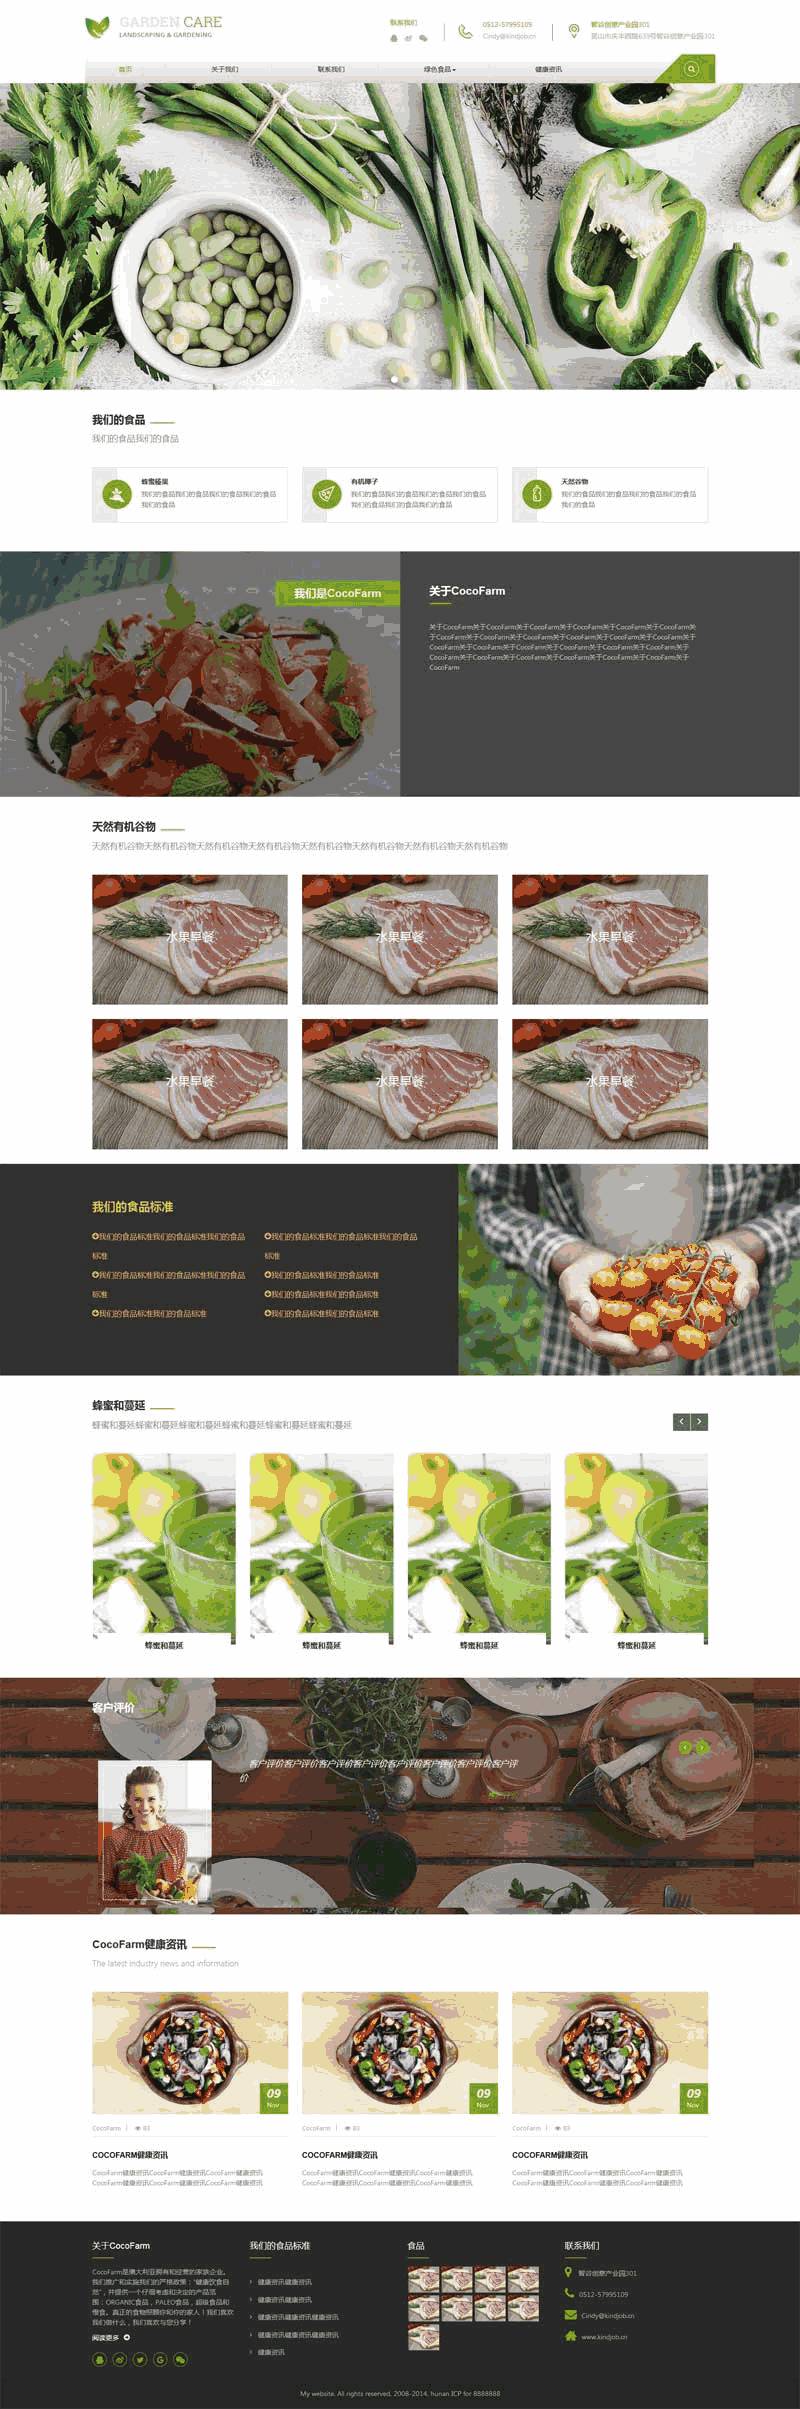 绿色大气有机蔬菜食品公司手机WordPress网站主题模板演示图